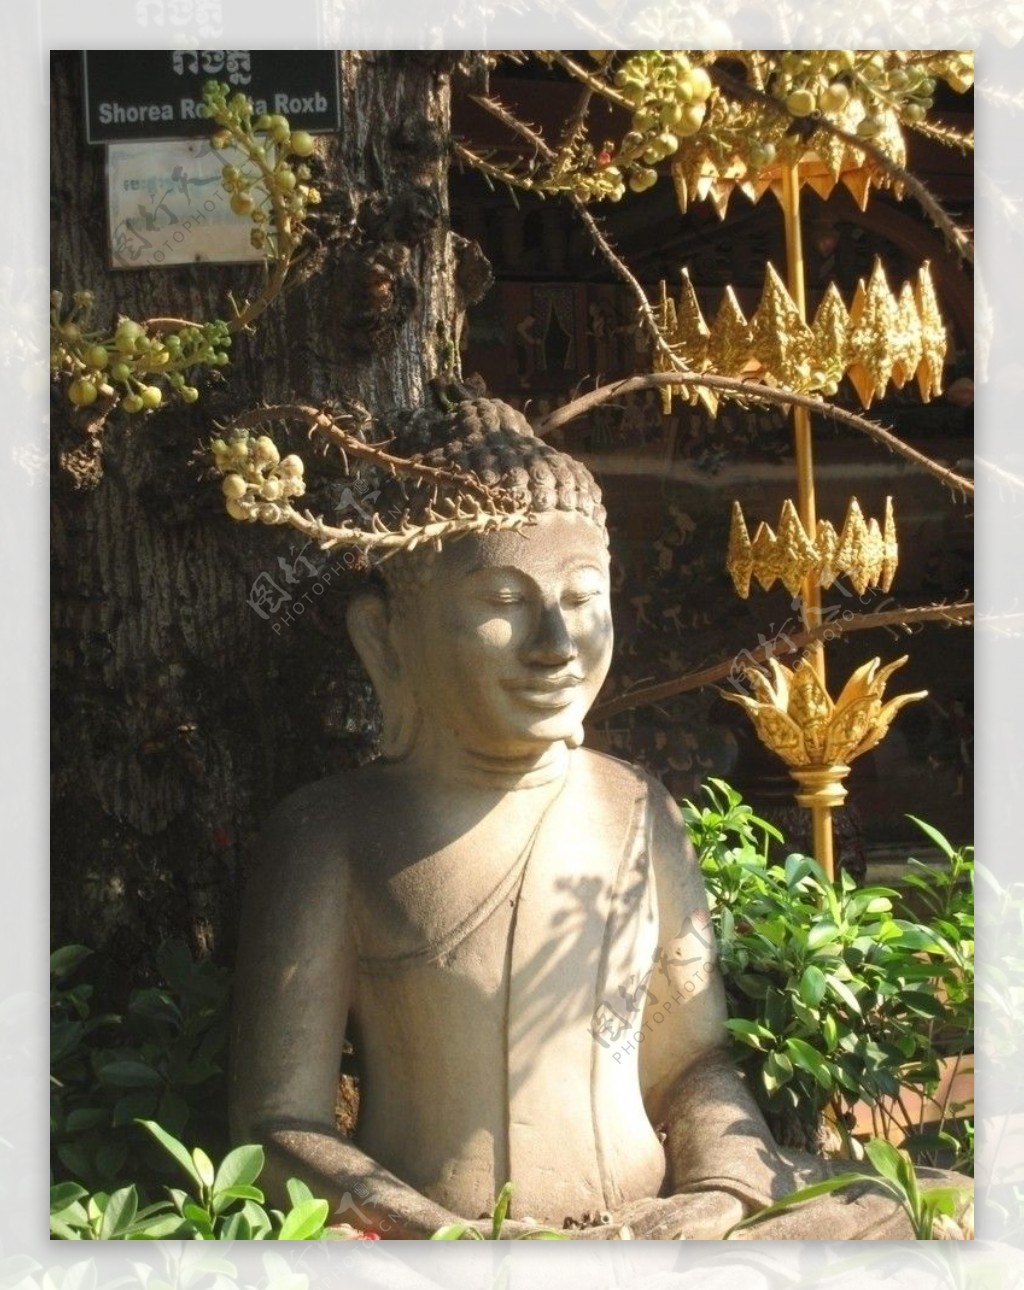 泰国石雕图片